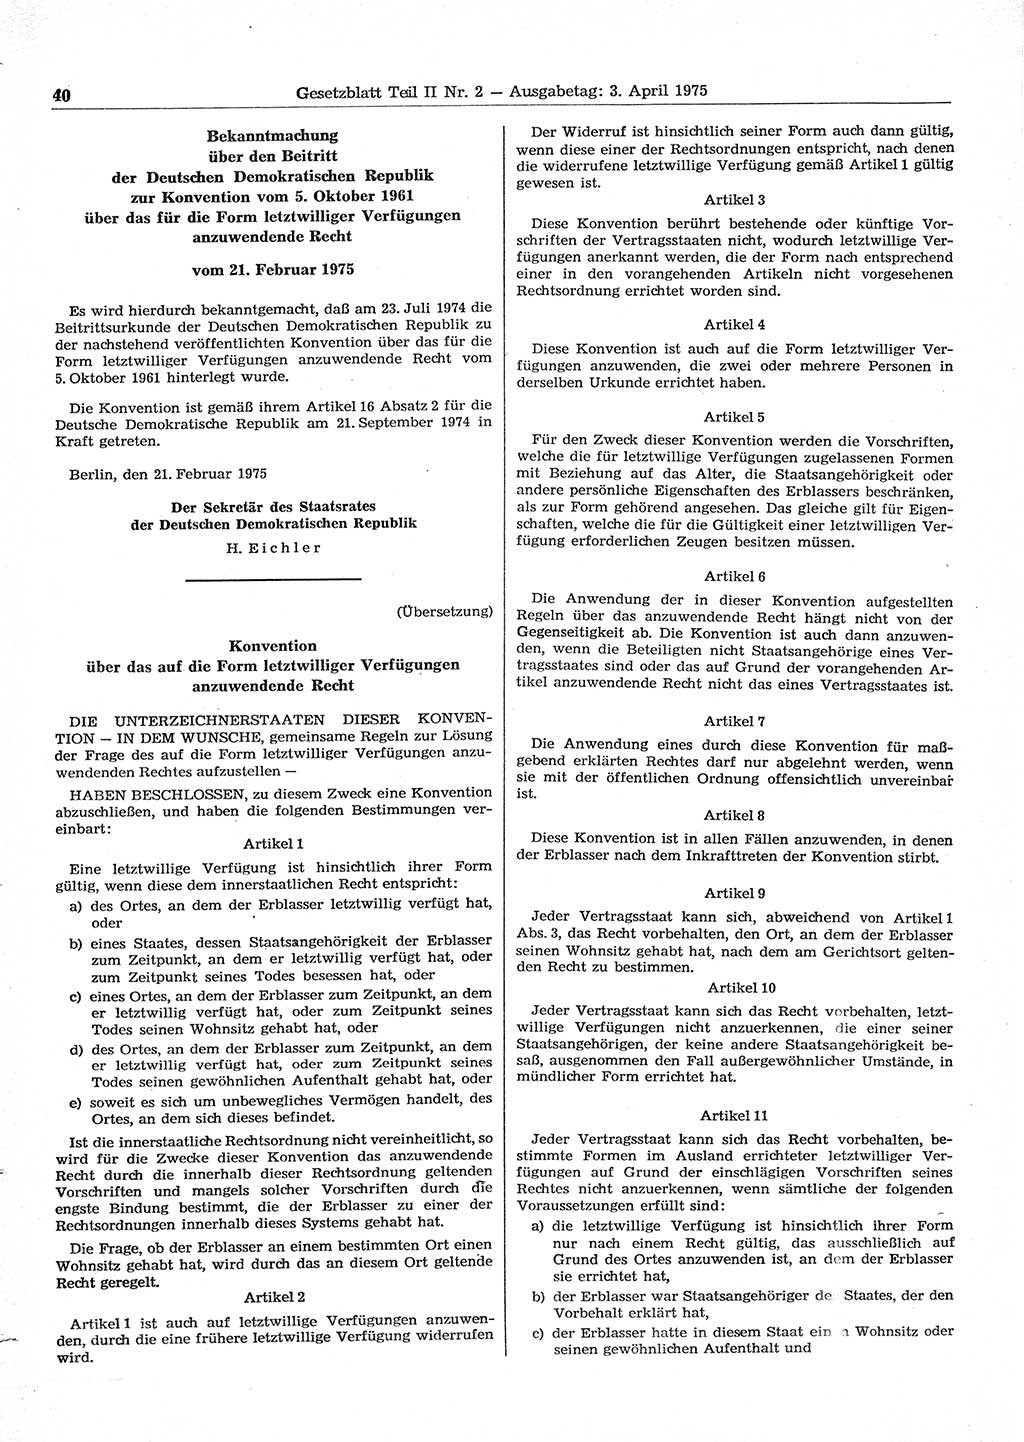 Gesetzblatt (GBl.) der Deutschen Demokratischen Republik (DDR) Teil ⅠⅠ 1975, Seite 40 (GBl. DDR ⅠⅠ 1975, S. 40)